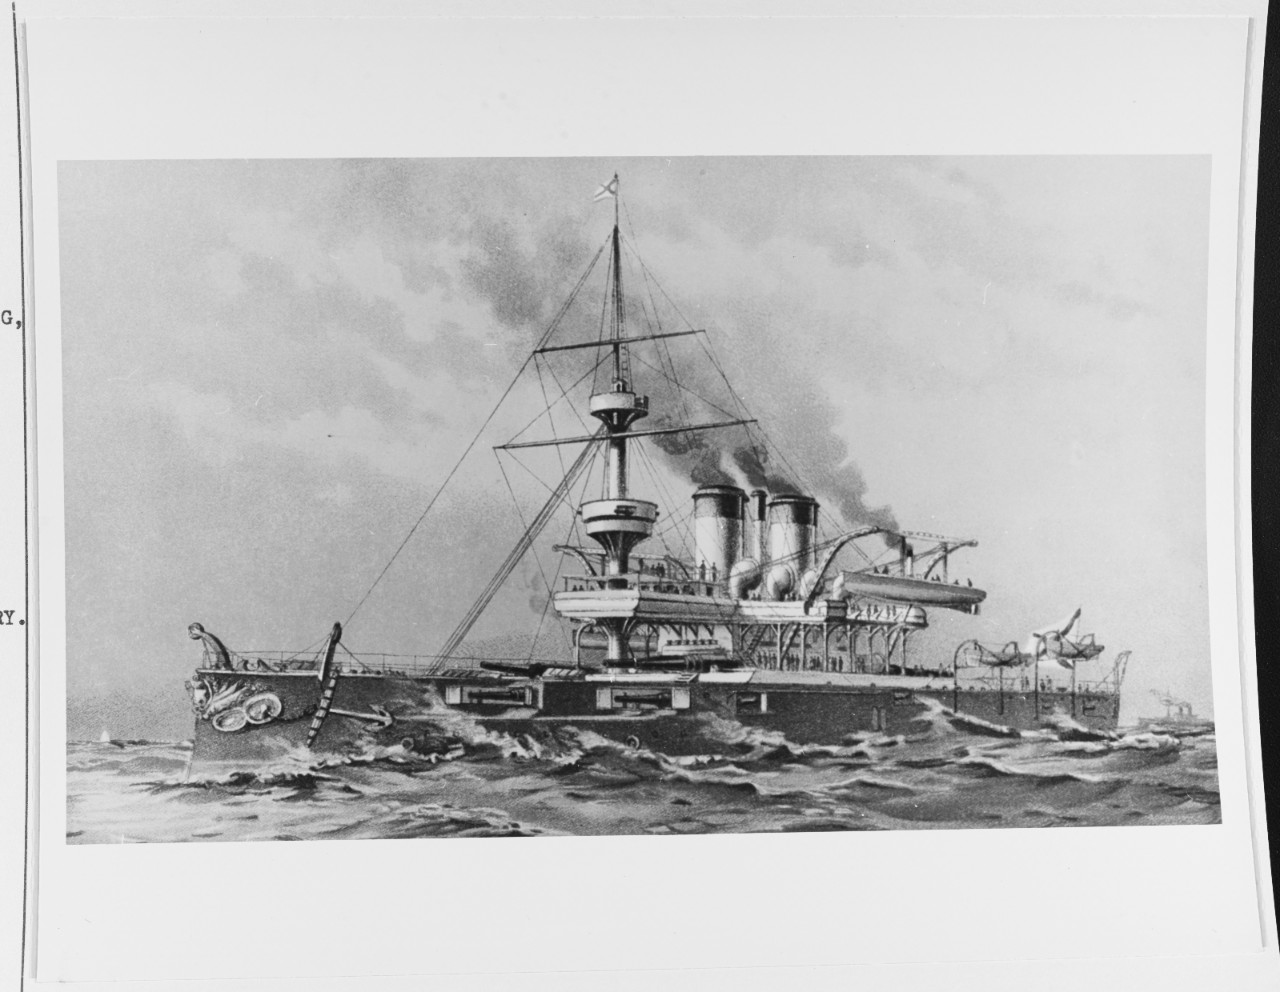 SINOPE (Russian battleship, 1887)